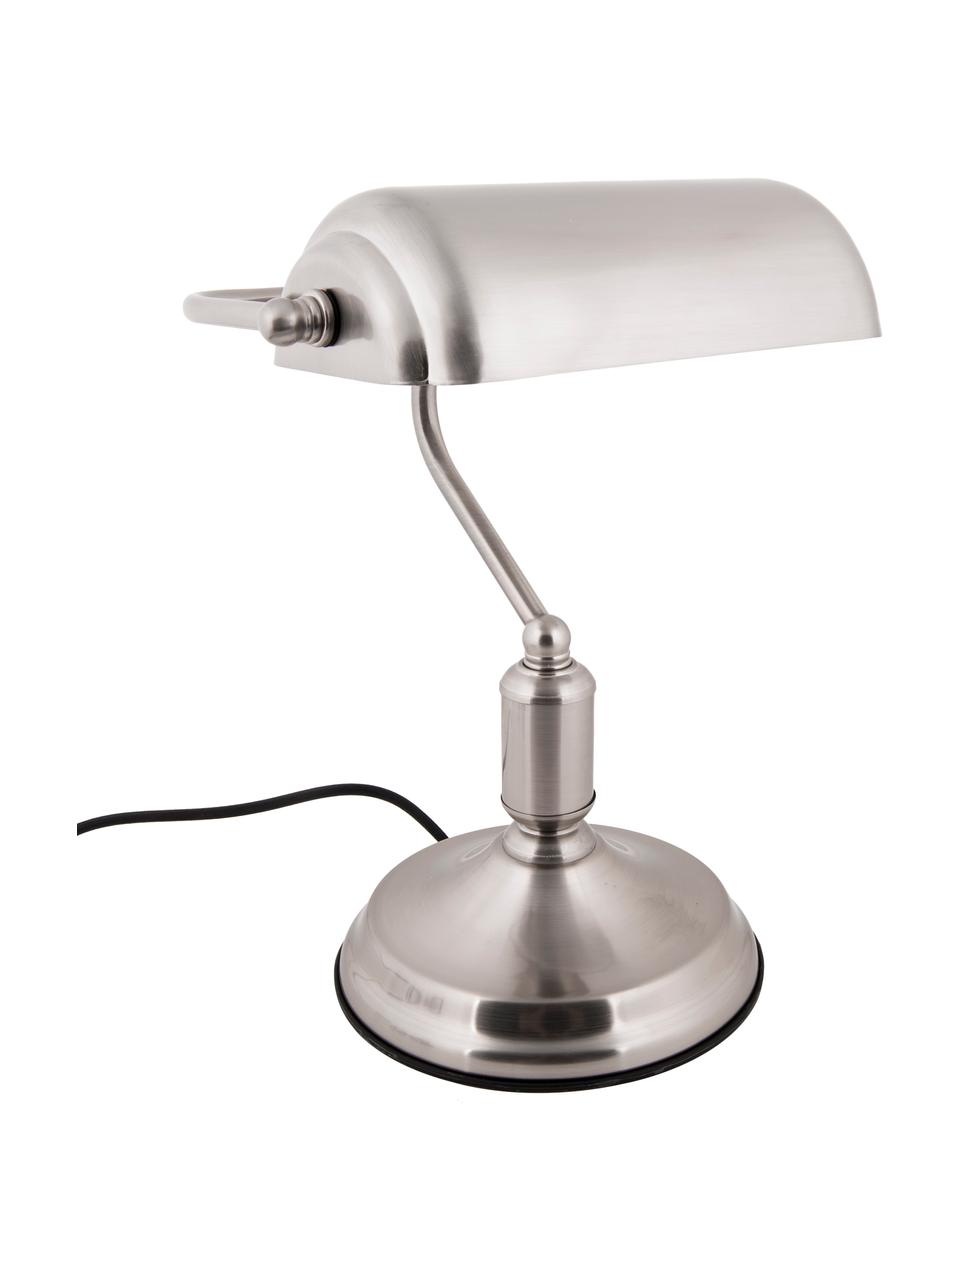 Lampa biurkowa z metalu w stylu retro Bank, Odcienie srebrnego, S 27 x W 34 cm